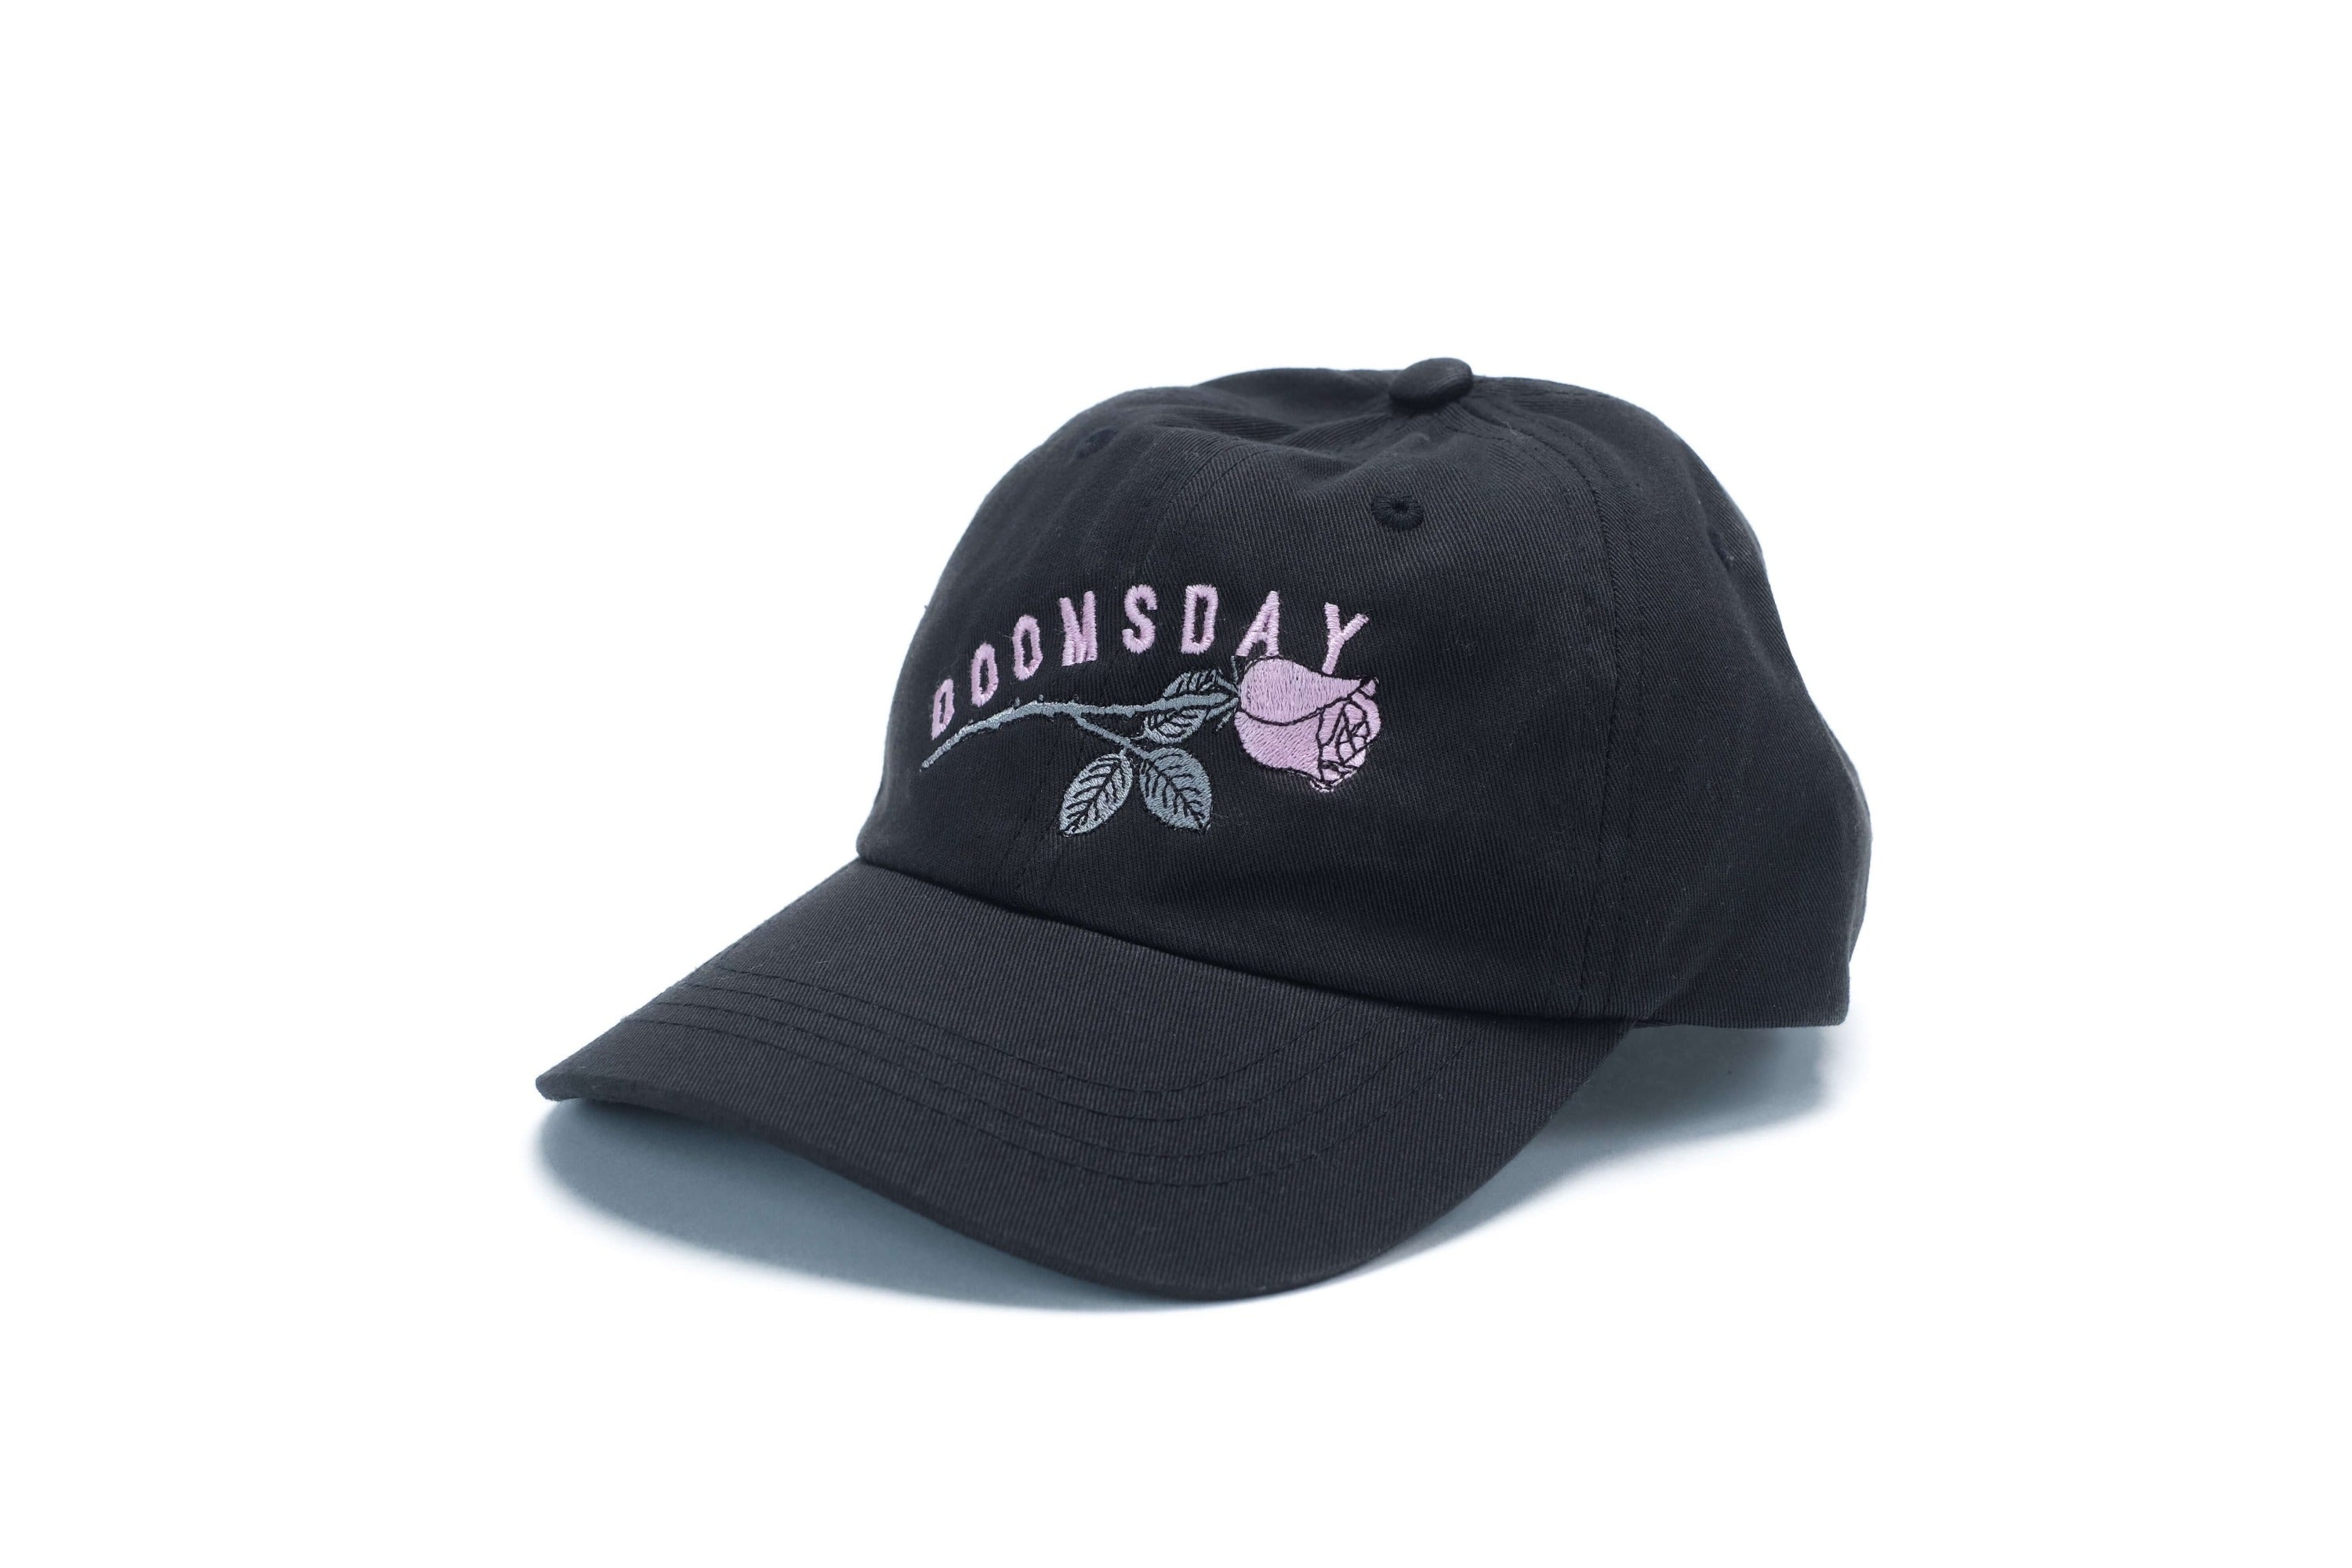 Rose design embroidered onto Black Dad Cap with adjustable size strap on back - doomsdayco Rose Black Dad Cap front